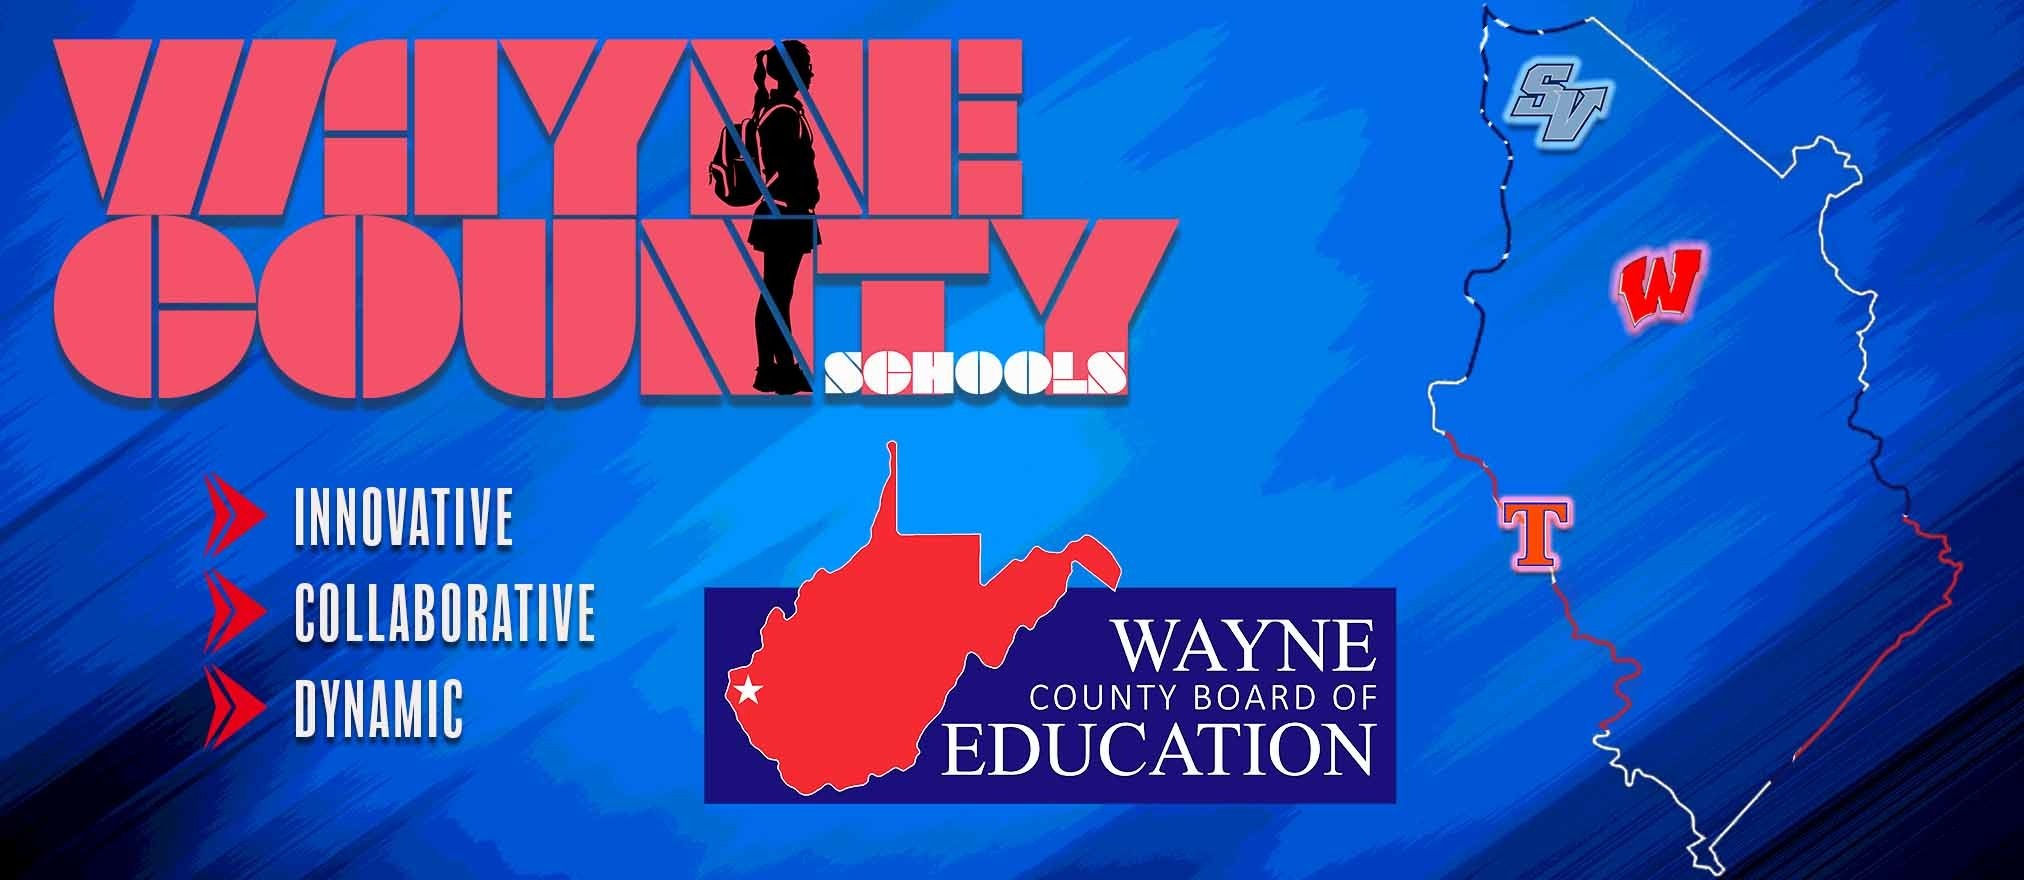 wayne county schools